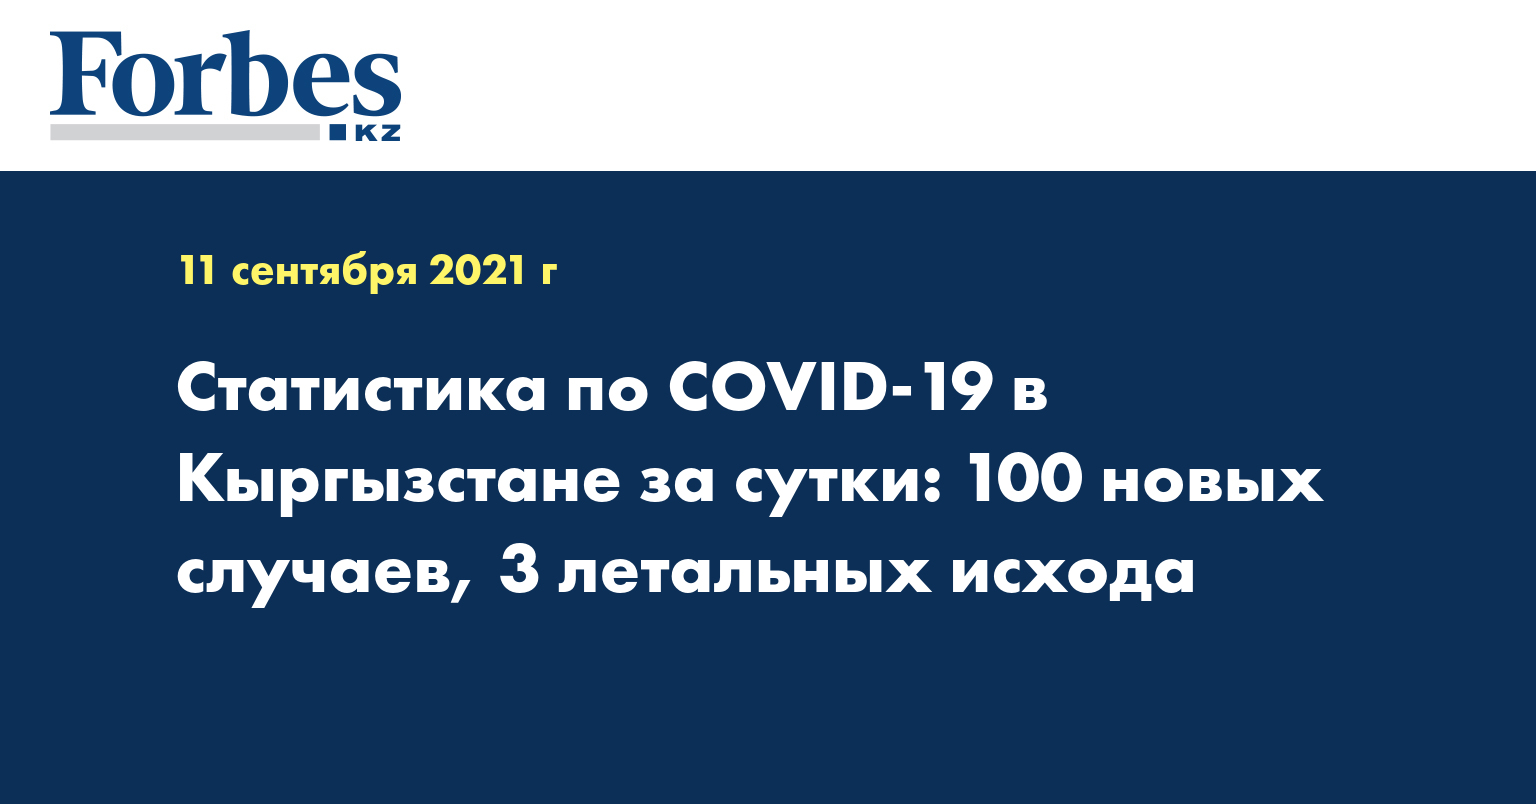 Статистика по COVID-19 в Кыргызстане за сутки: 100 новых случаев, 3 летальных исхода